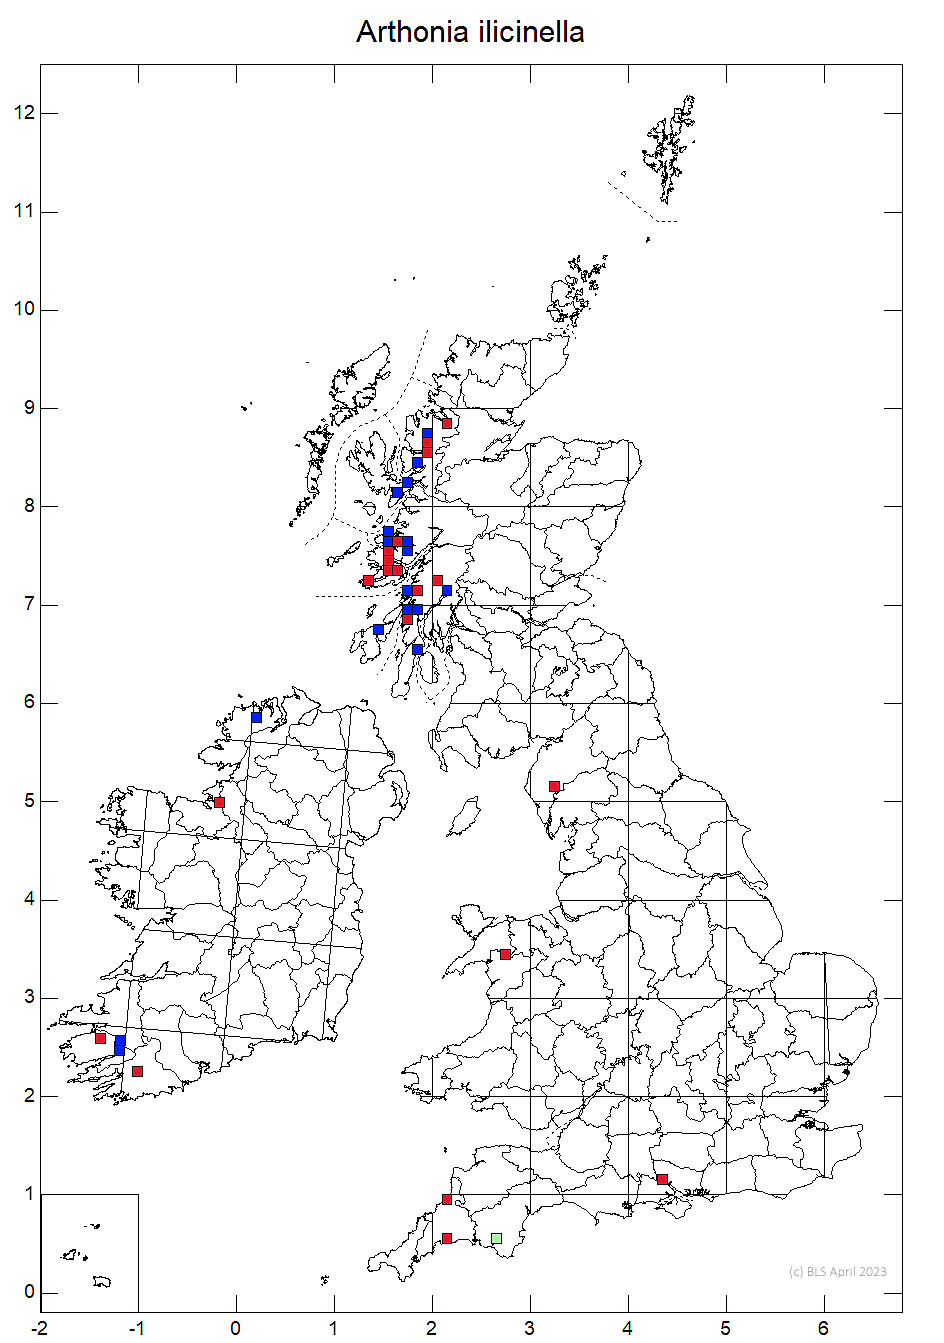 Arthonia ilicinella 10km sq distribution map